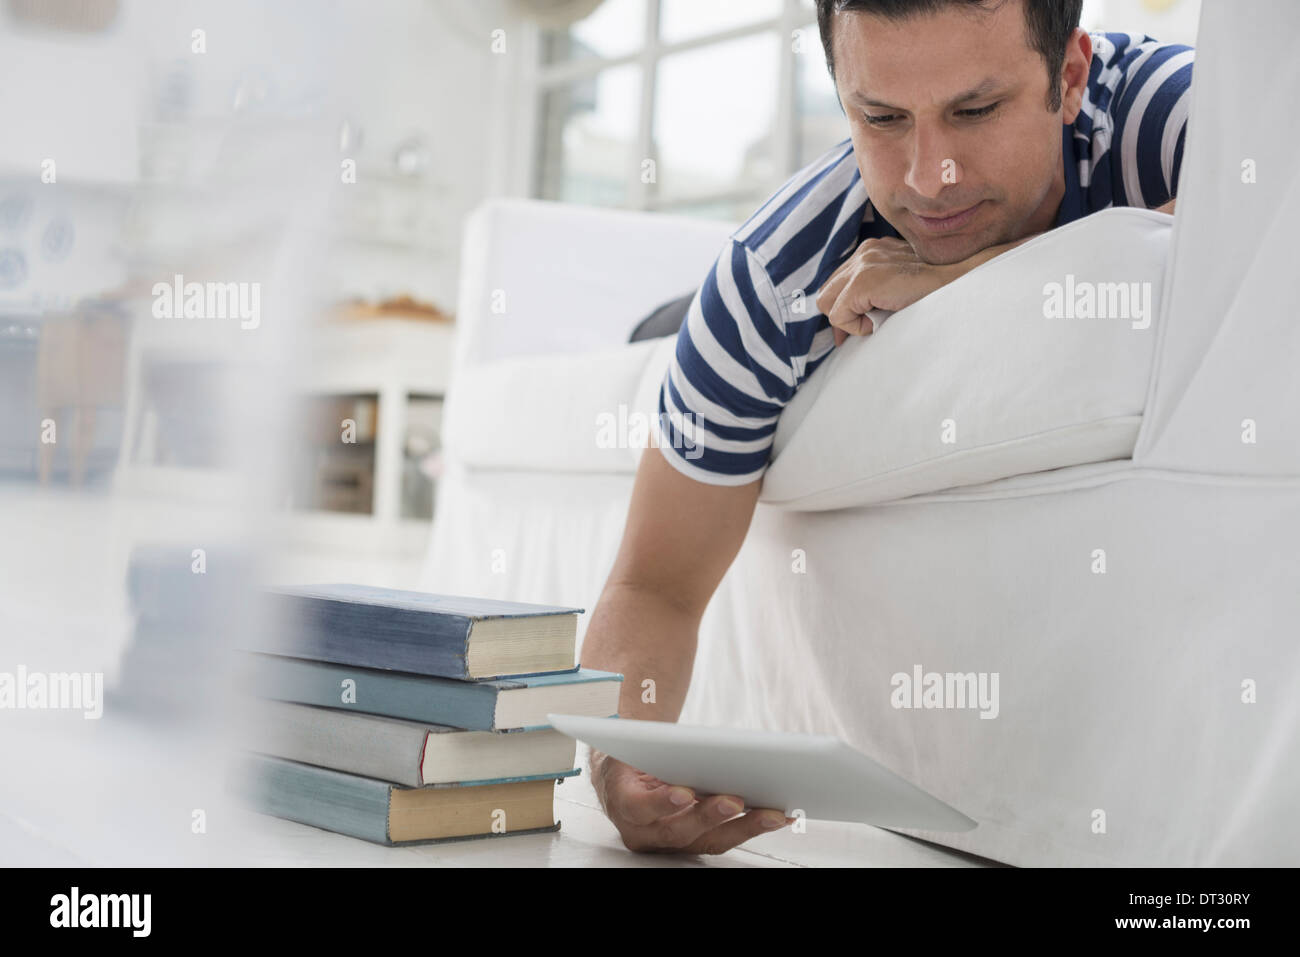 Mann liegt auf seiner Vorderseite auf einem Sofa in einer ruhigen luftig Büroumgebung mit einem digitalen tablet Stockfoto